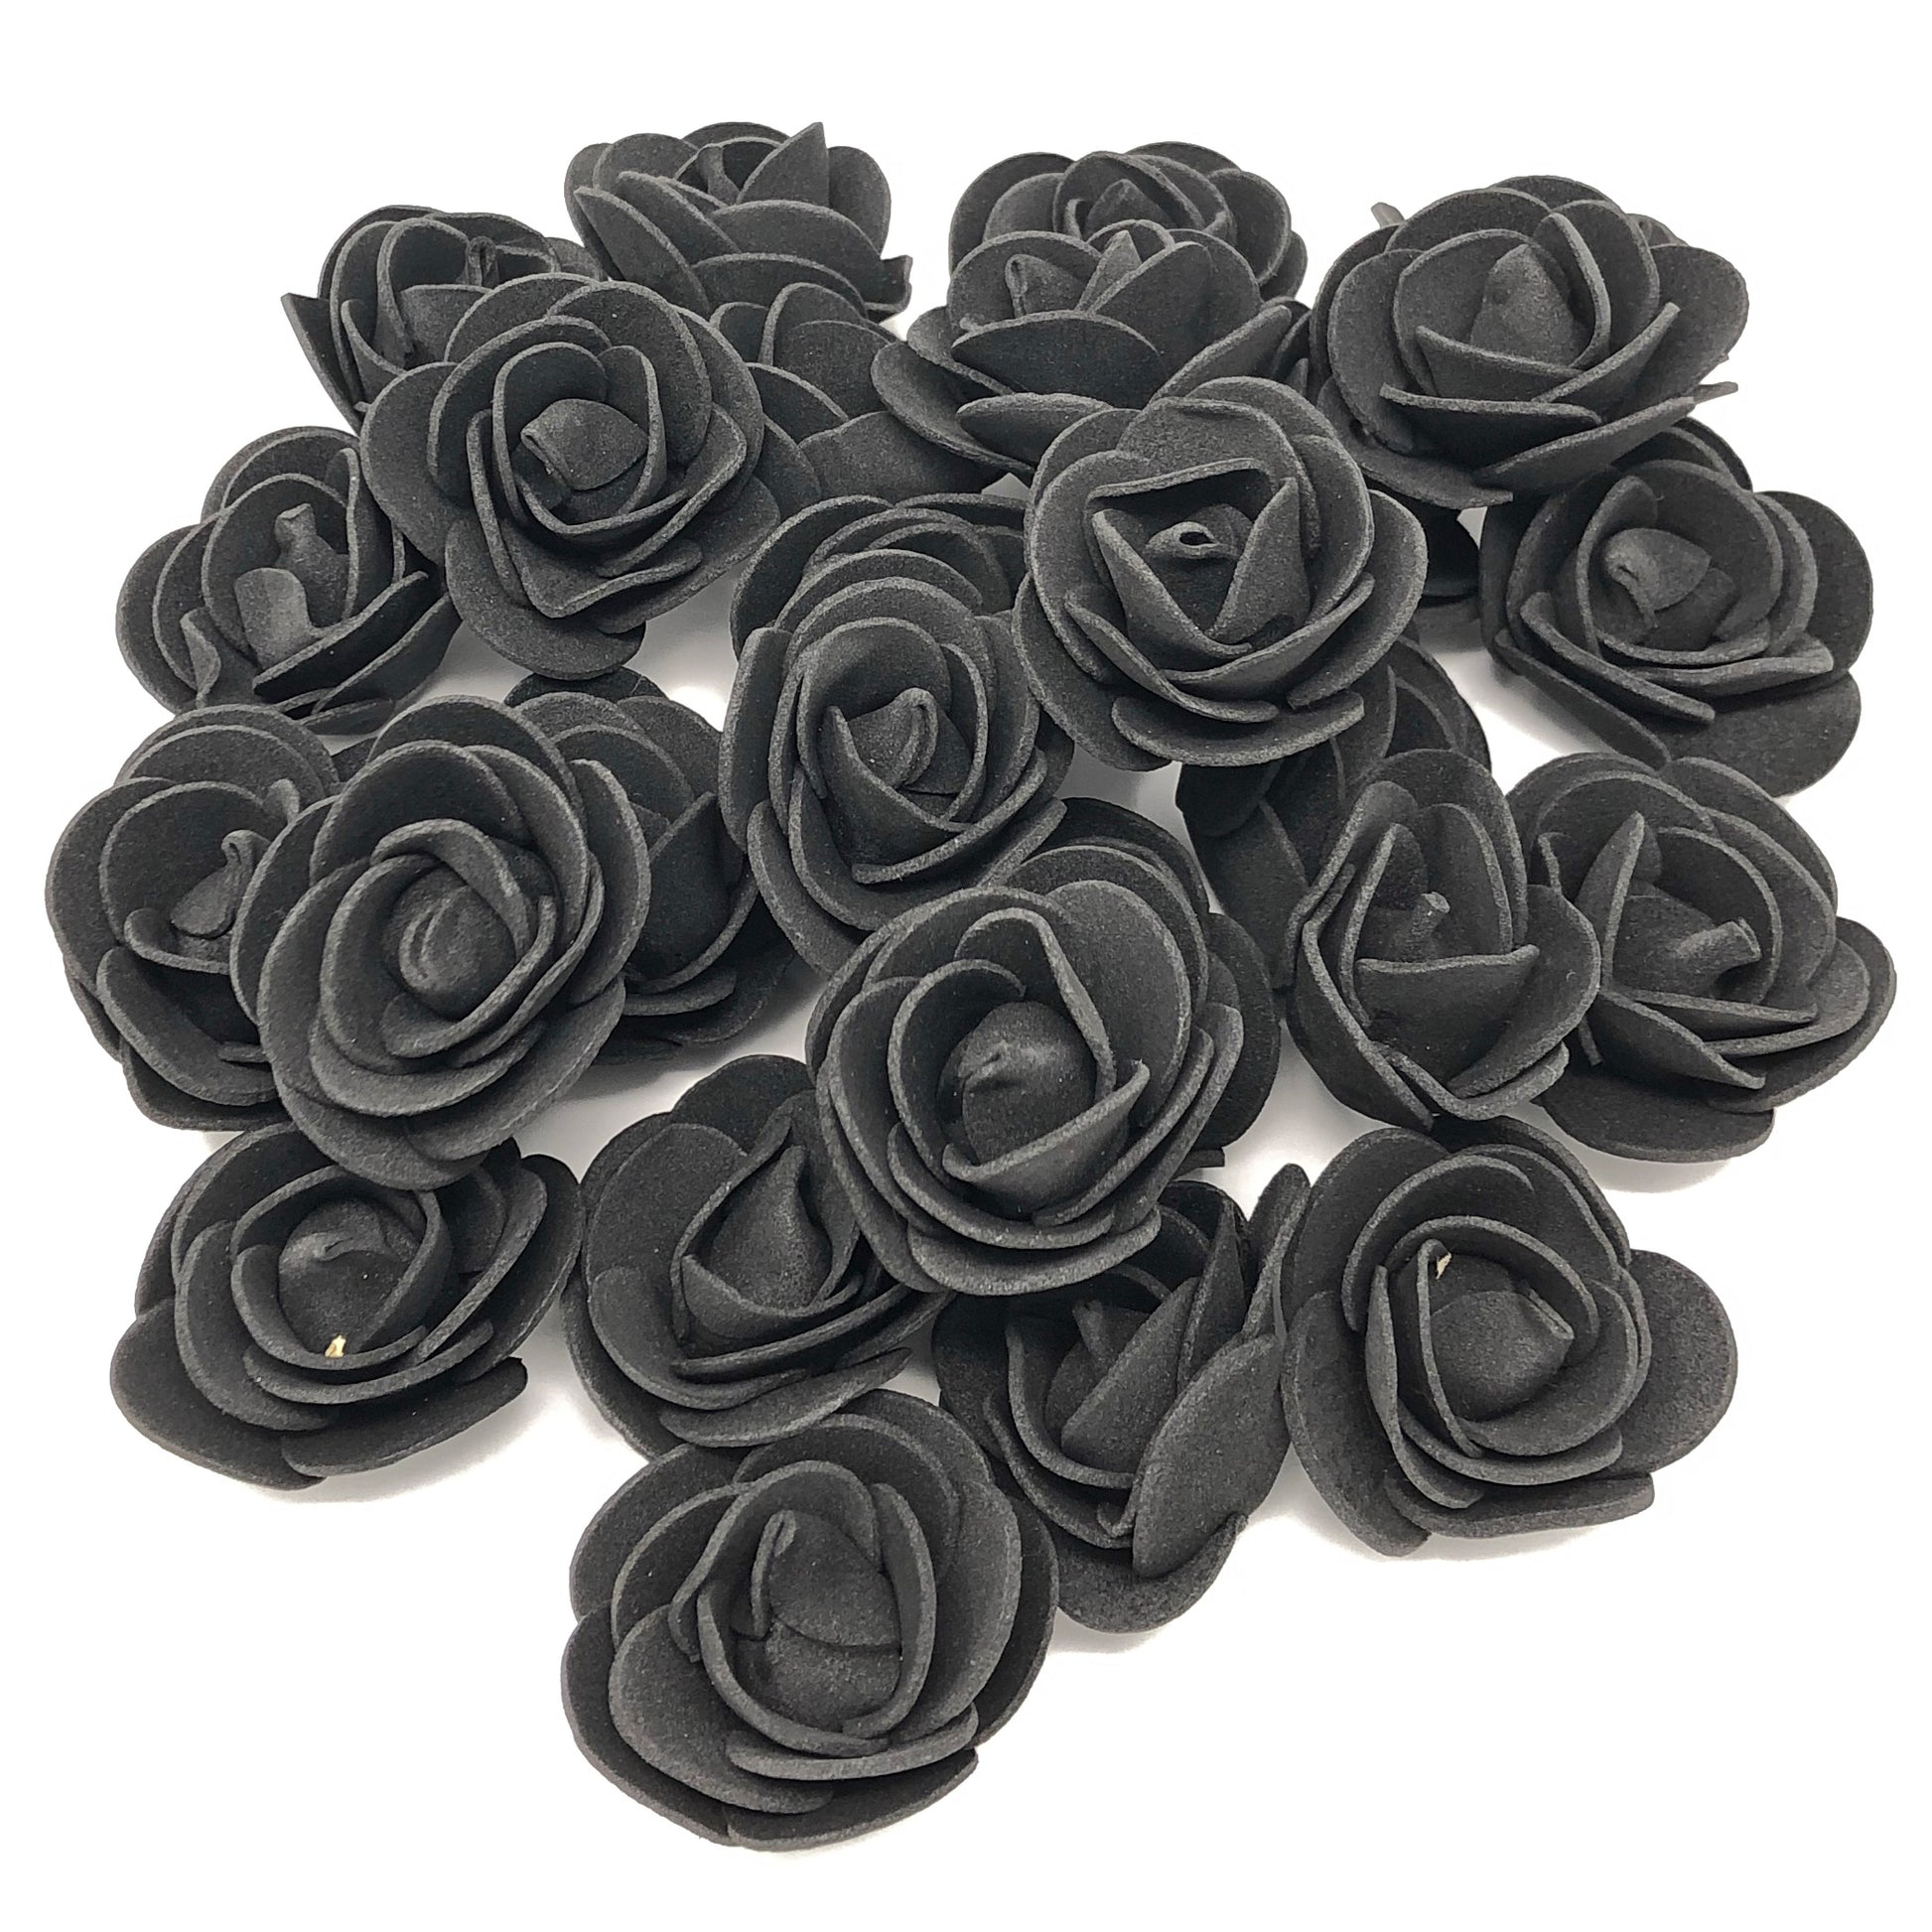 Black 30mm Foam Rose Flowers